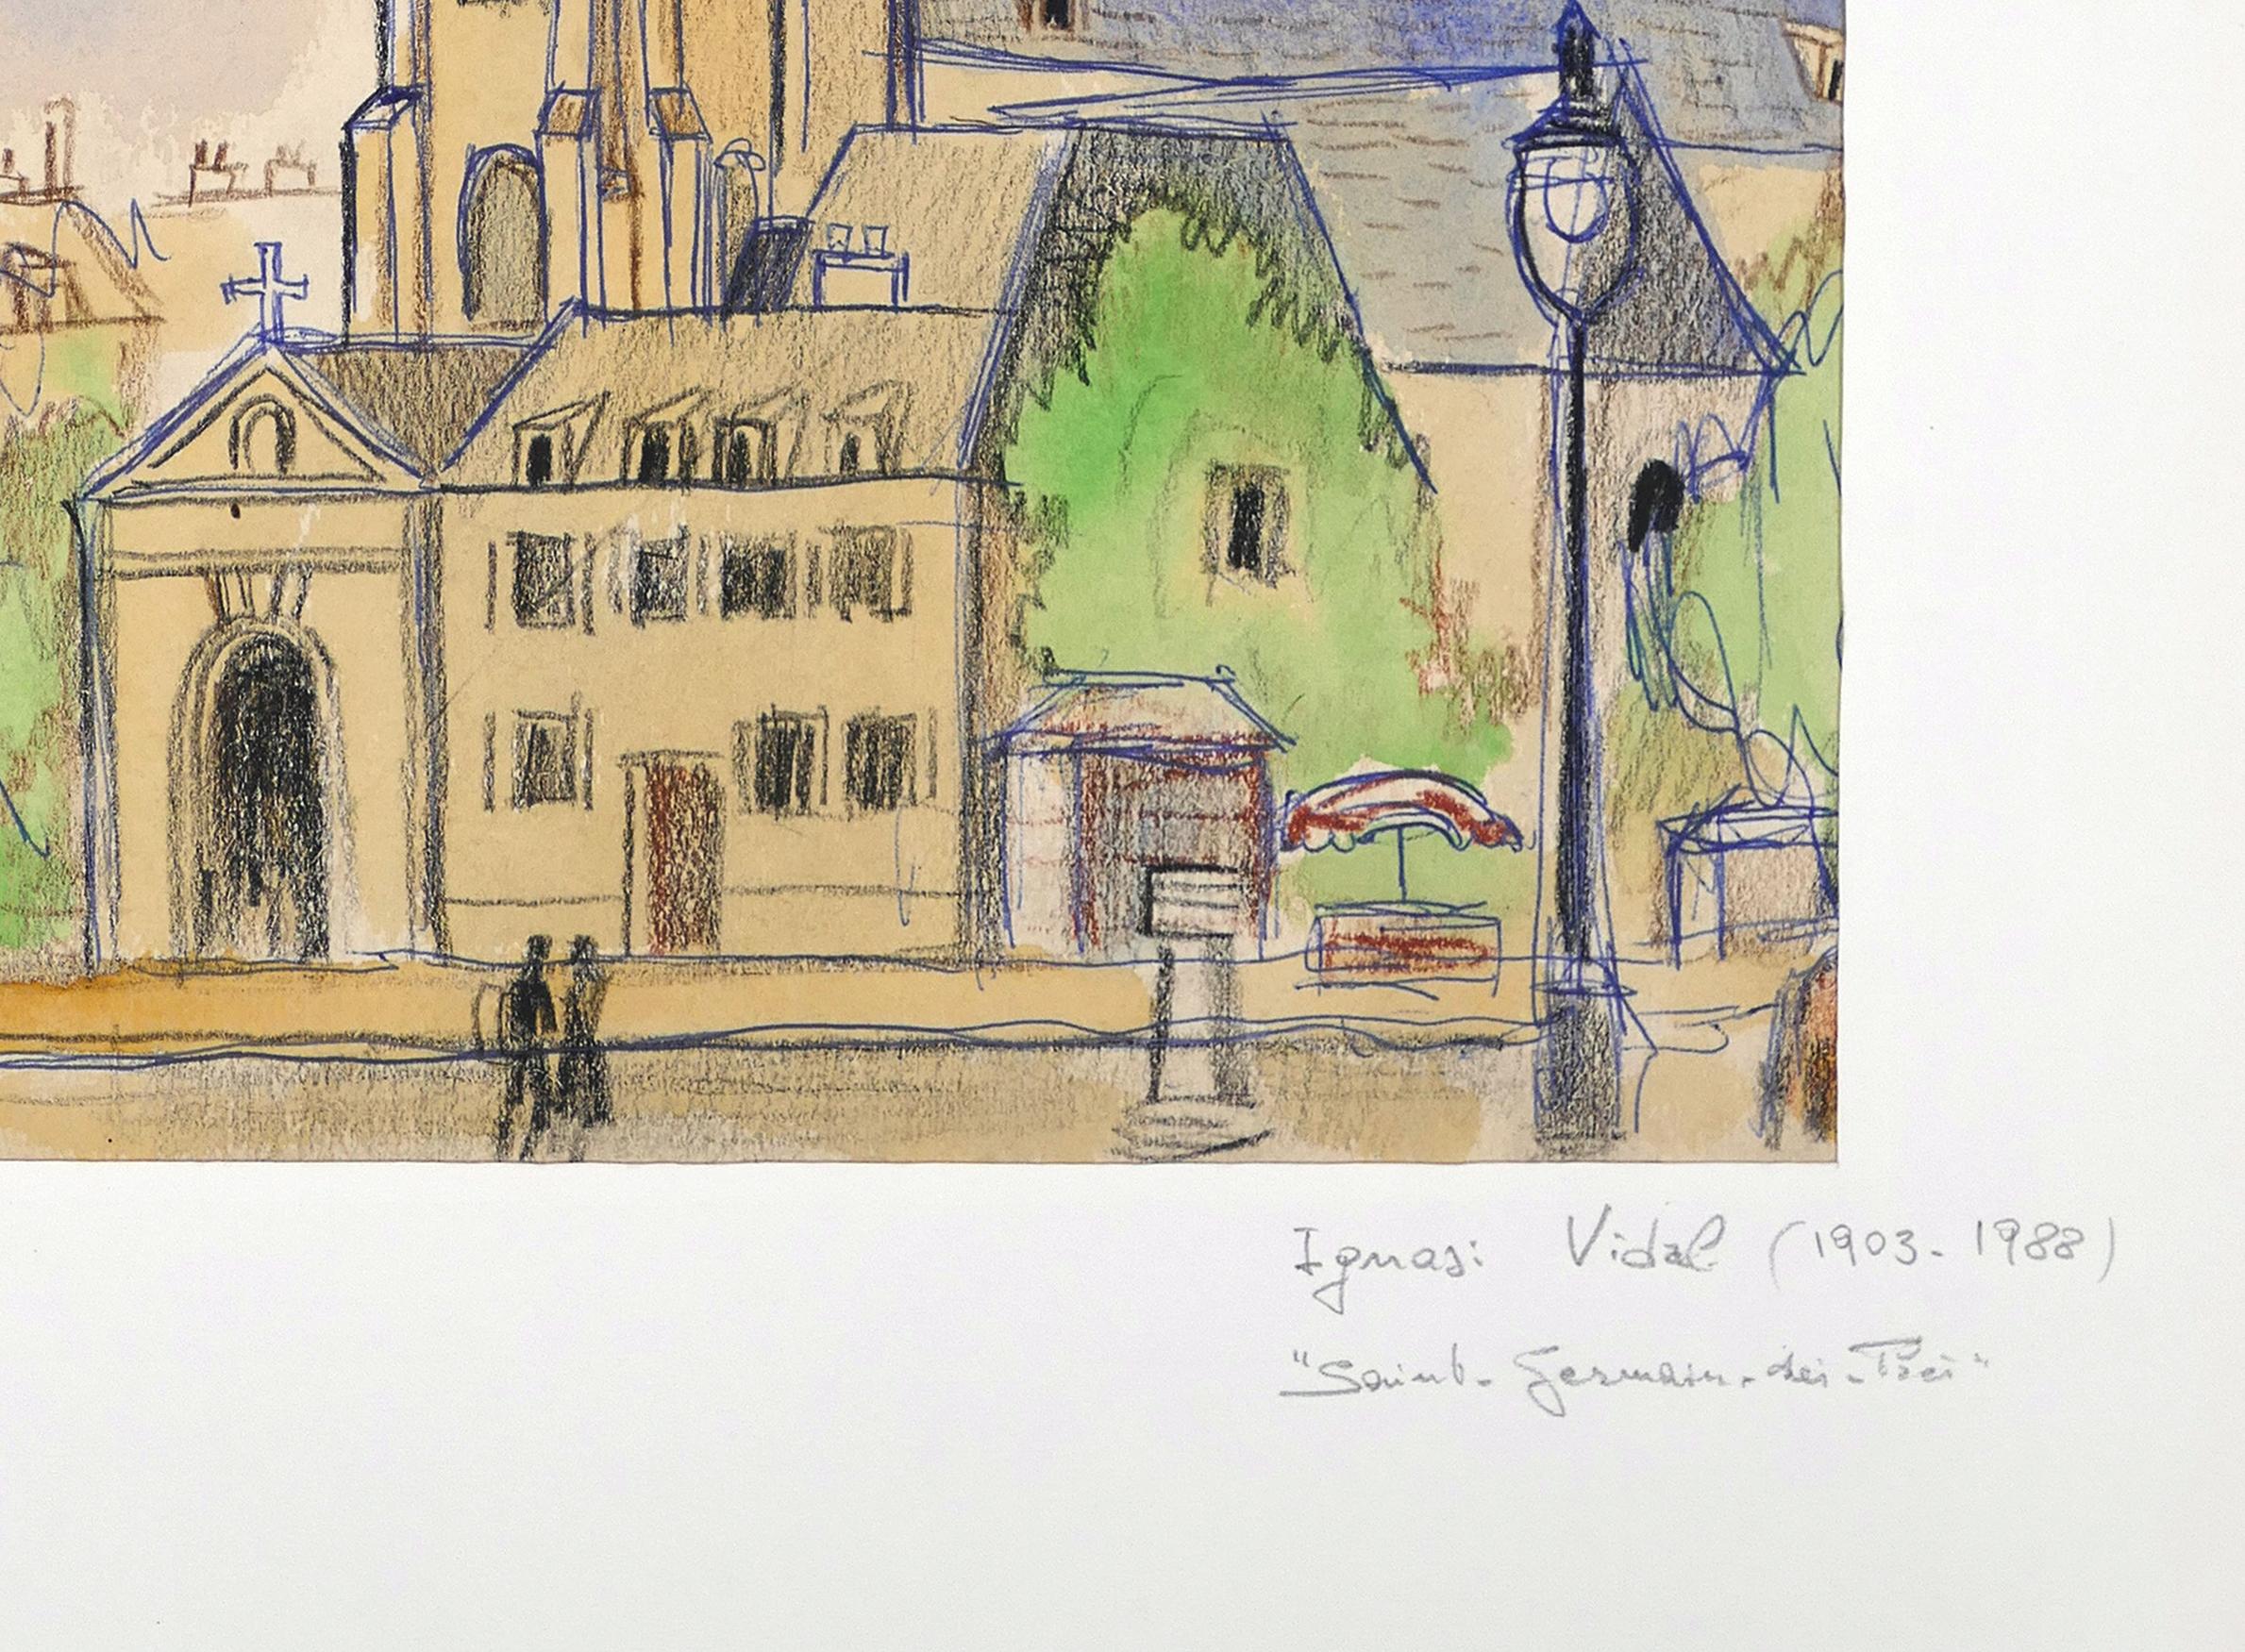 Saint Germain de Prs – Tusche, Pastell und Aquarell auf Papier – 1950er Jahre (Zeitgenössisch), Mixed Media Art, von Ignasi Vidal